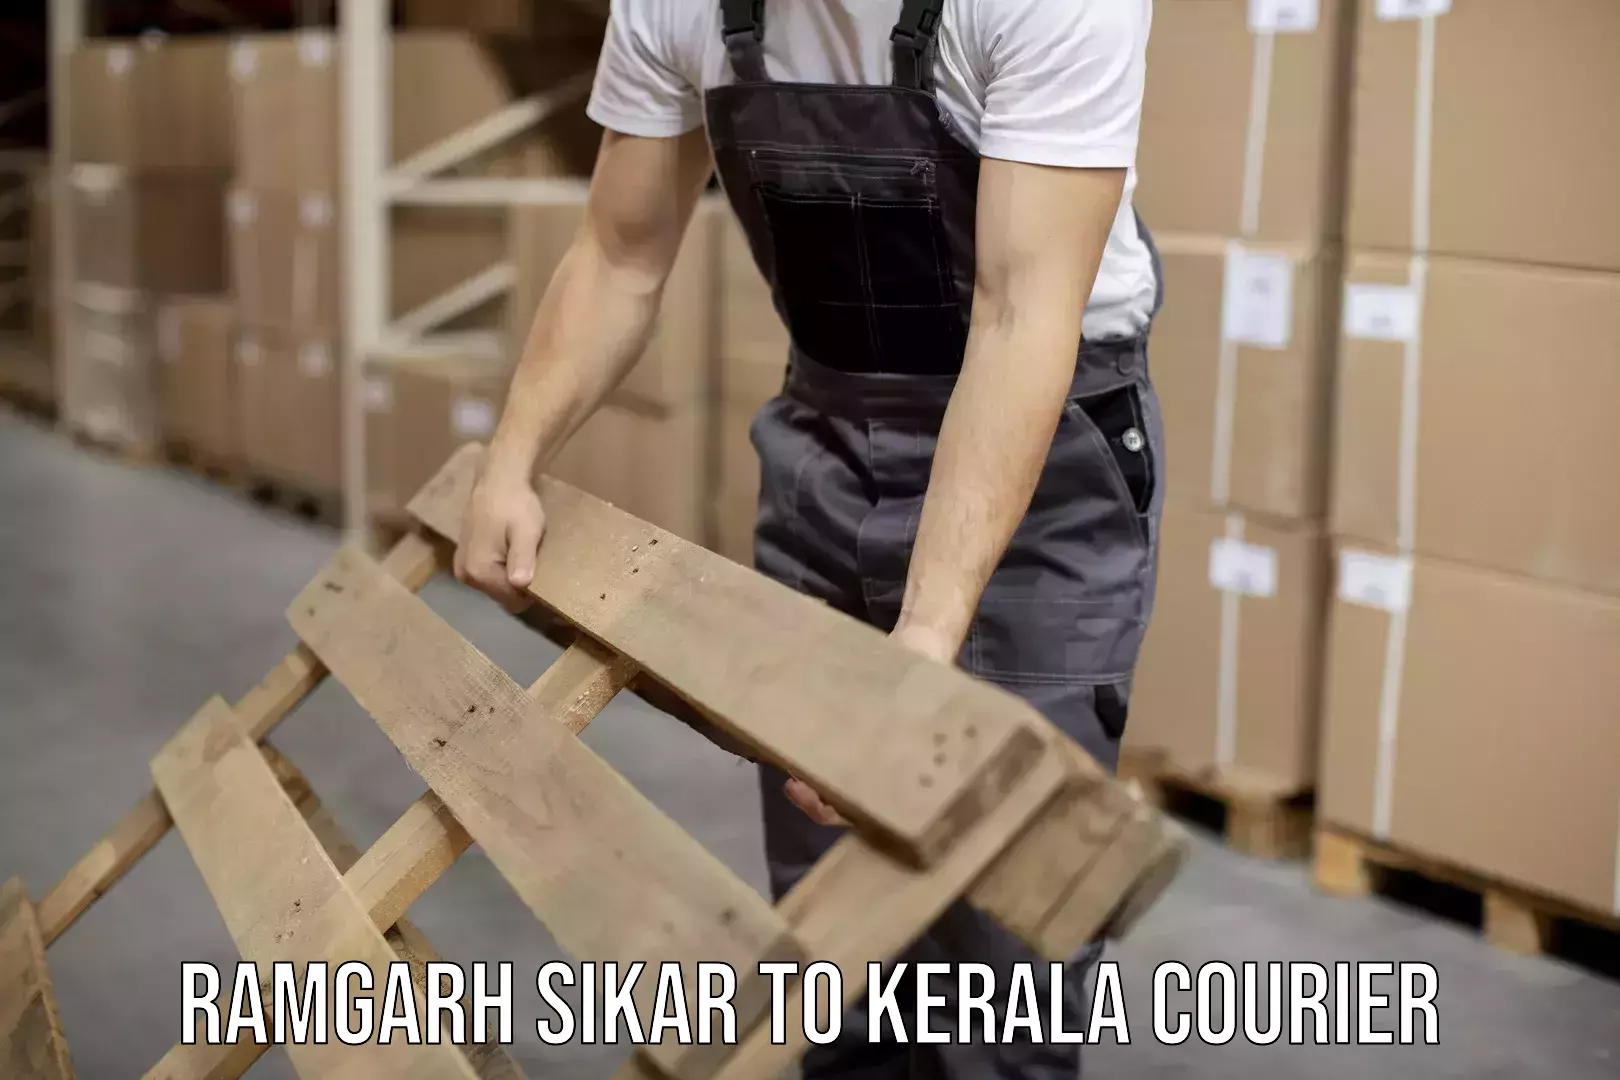 Lightweight courier Ramgarh Sikar to Kottarakkara